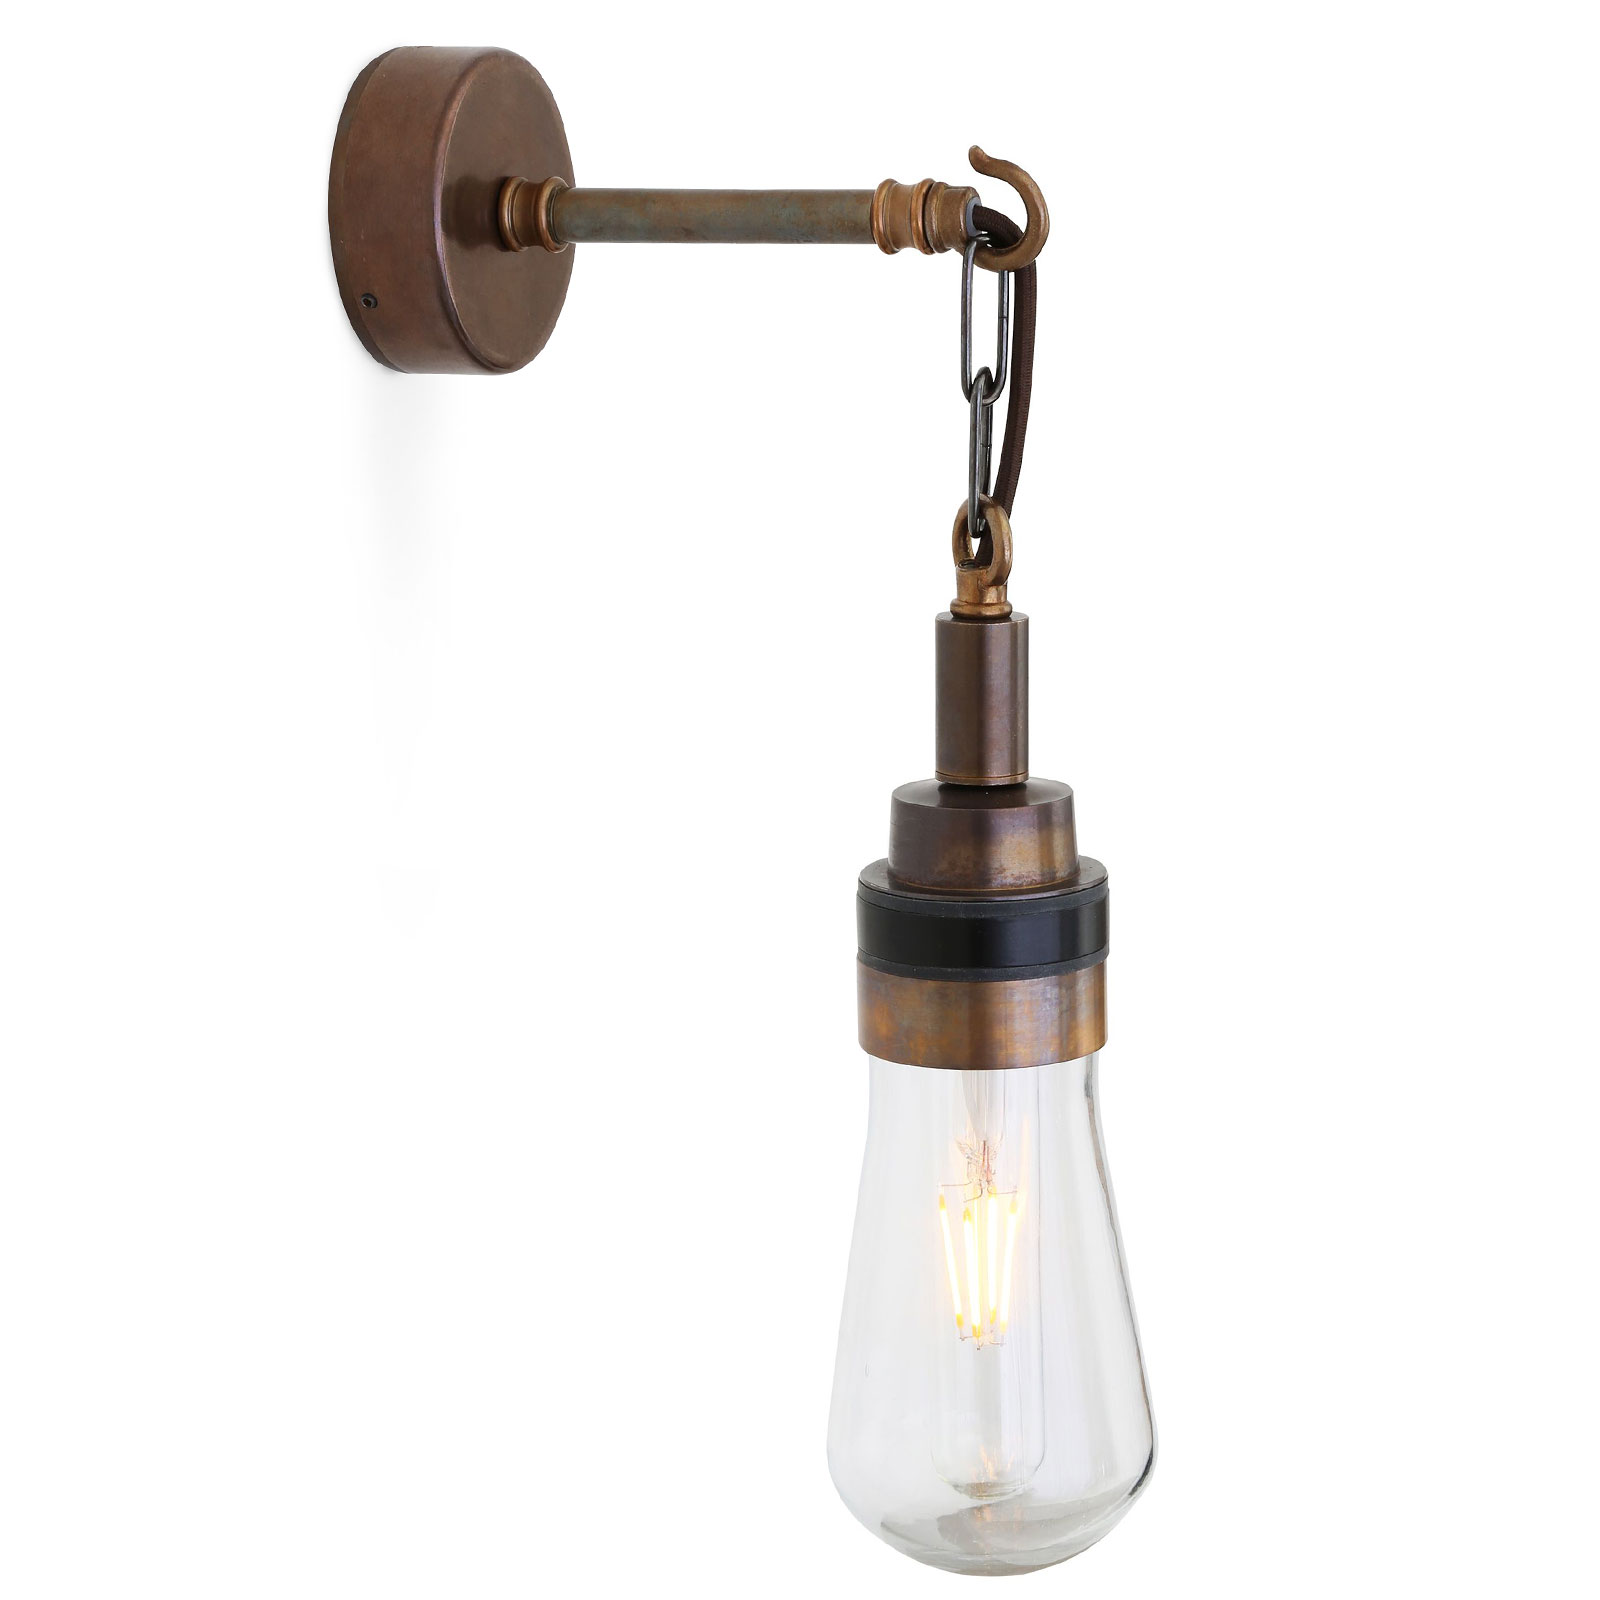 Rustikale Wandlampe mit Glaskolben, Haken und Kette, IP65